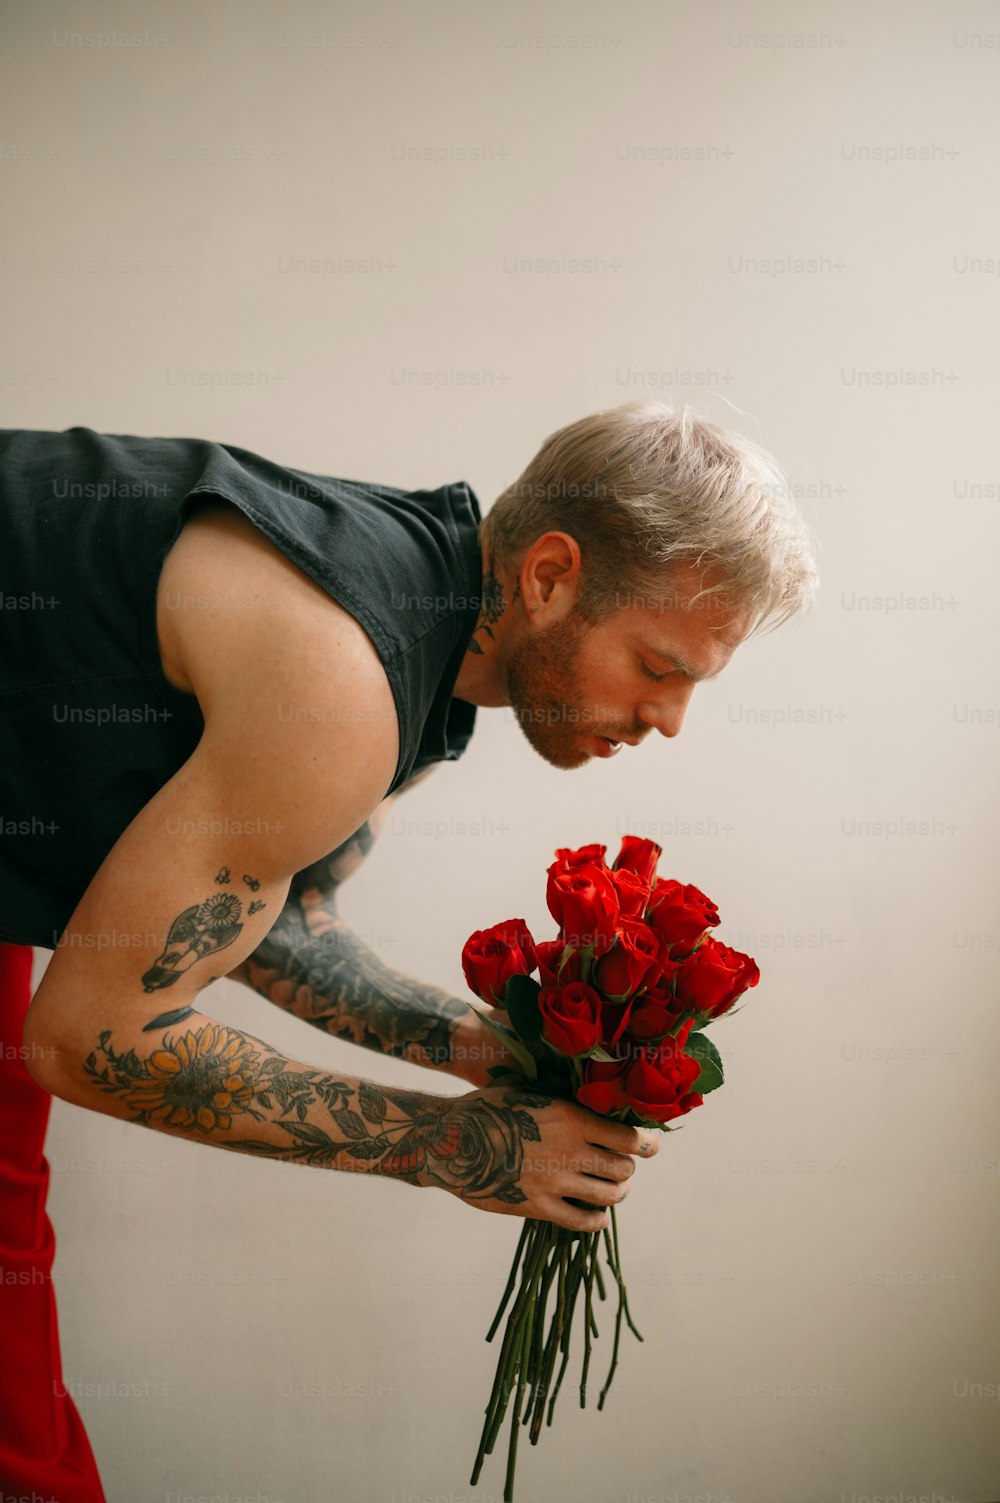 붉은 꽃다발을 들고 있는 남자